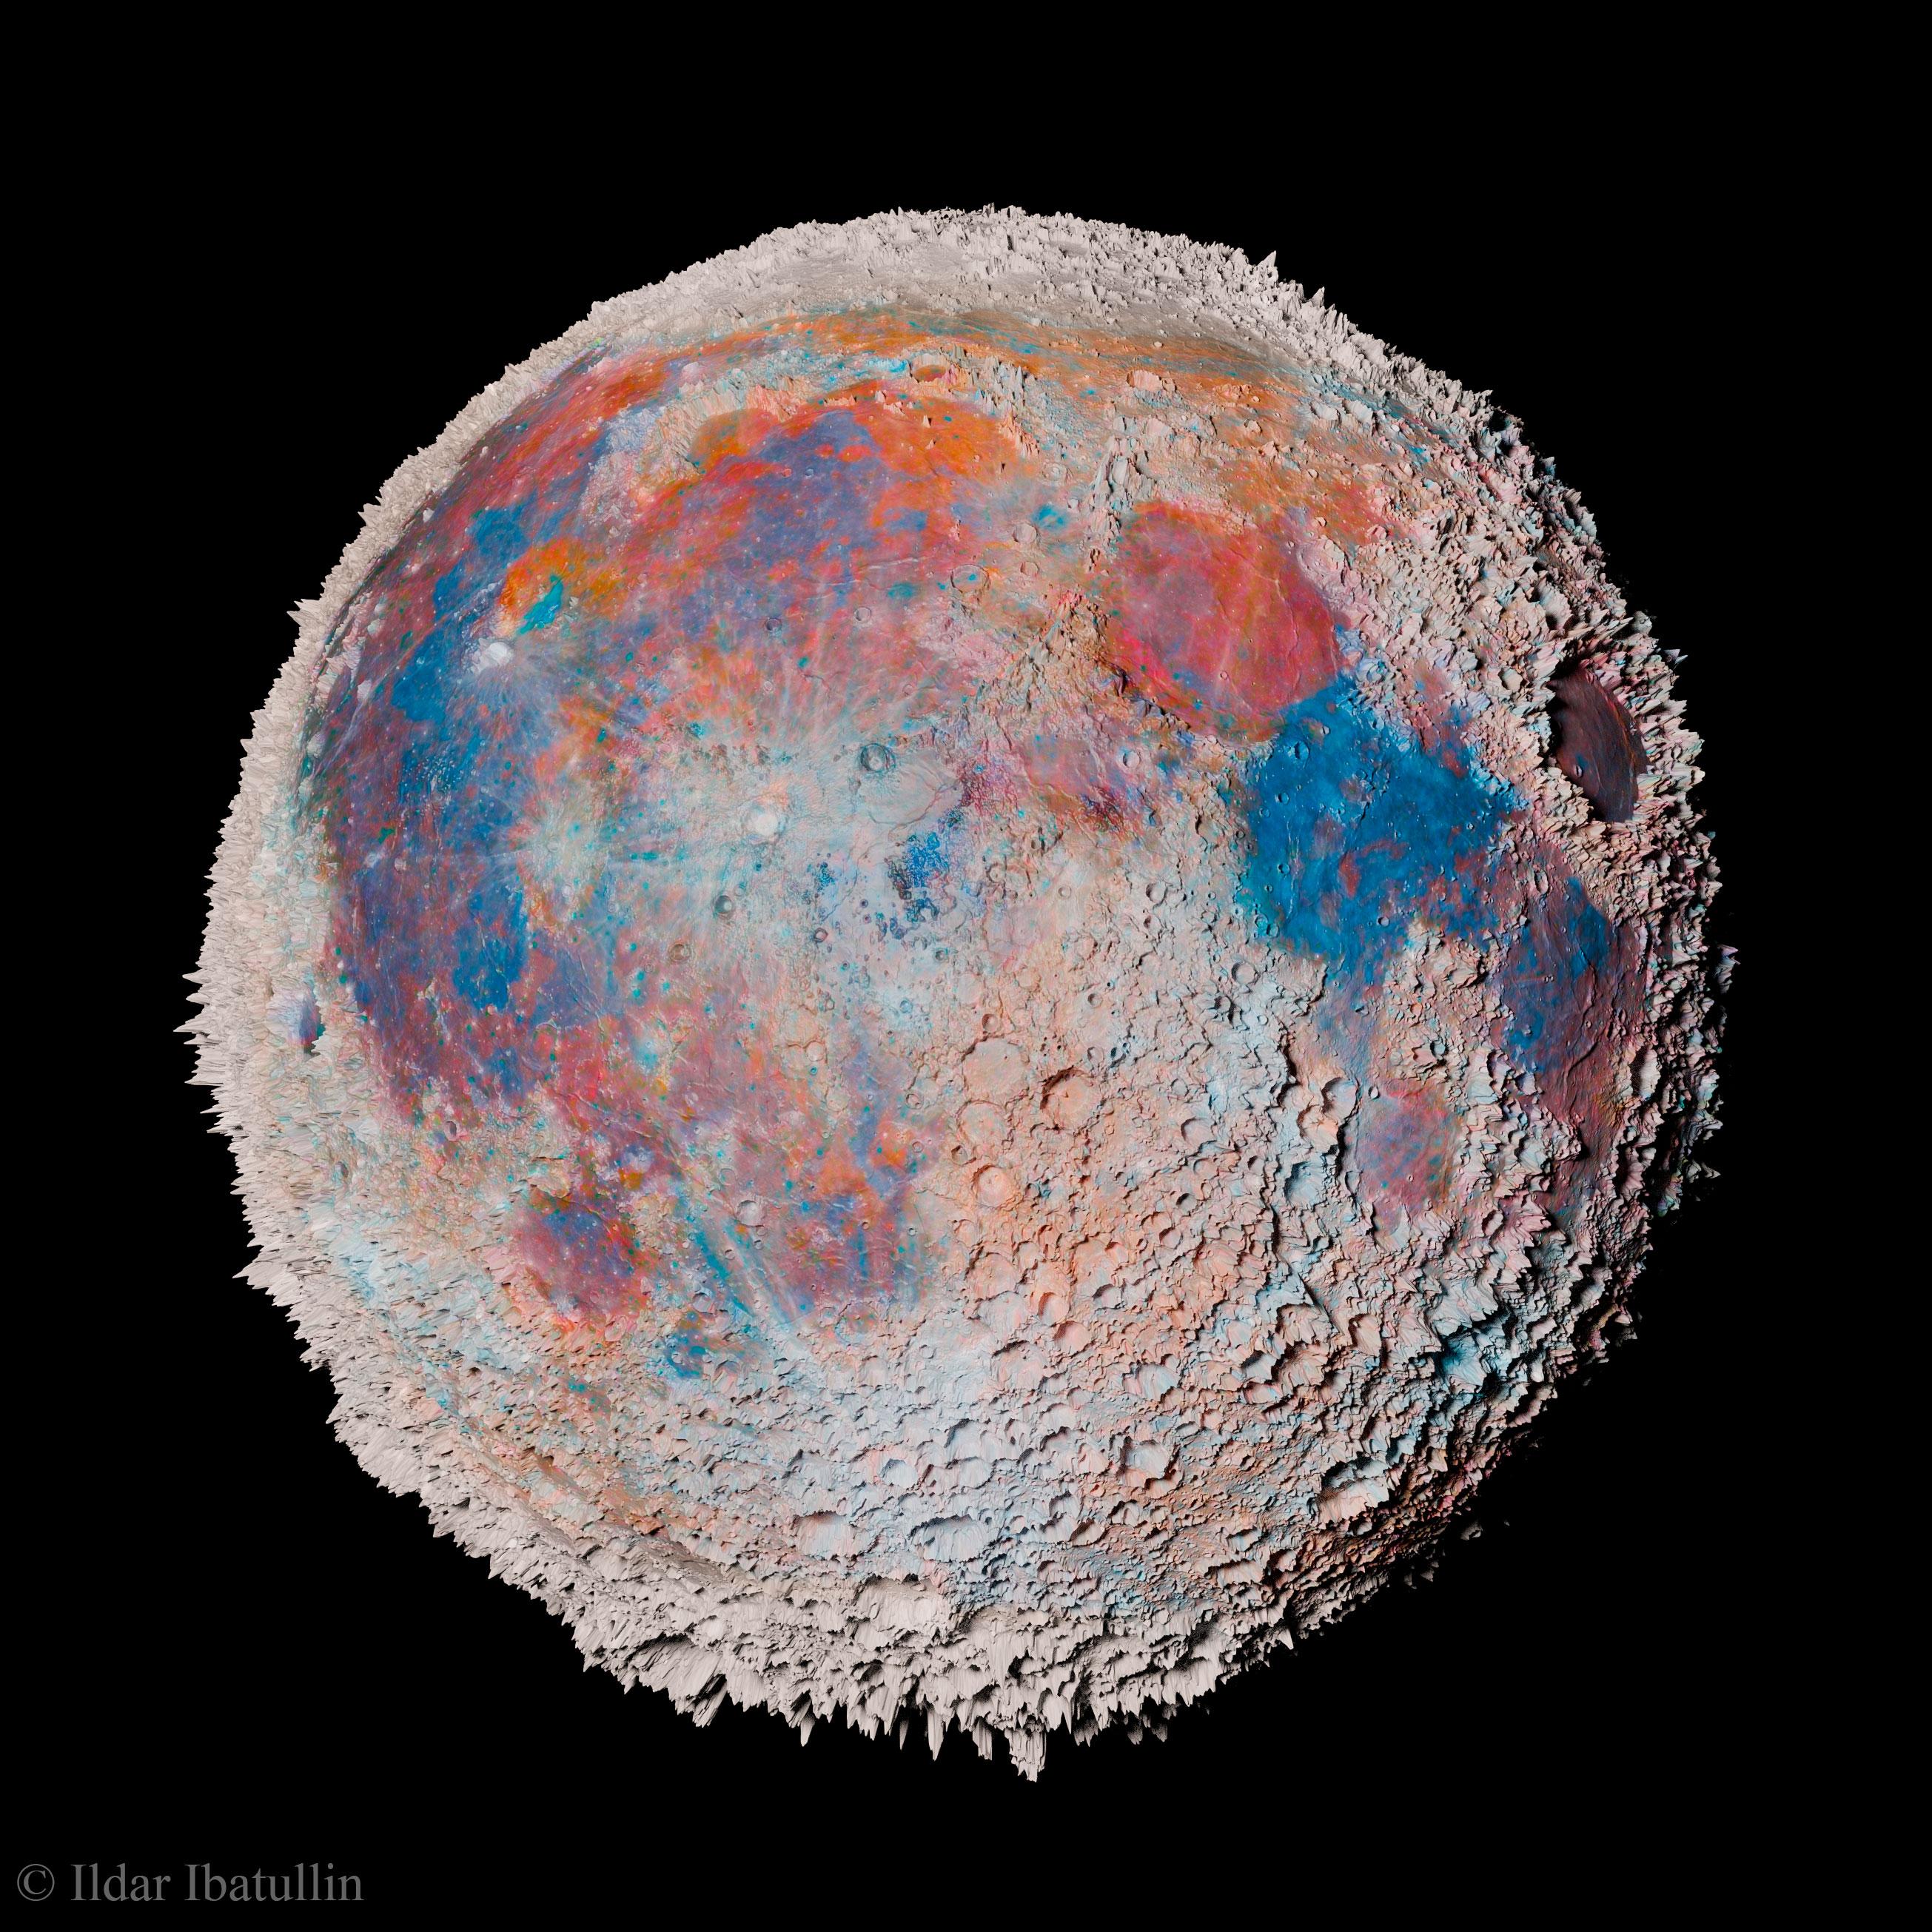 قمر الأرض مع مبالغة كبيرة بارتفاعات معالم السطح. الألوان مُبالَغٌ بها أيضاً حيث تغدو مناطق الأزرق والأحمر أسهل رؤية.